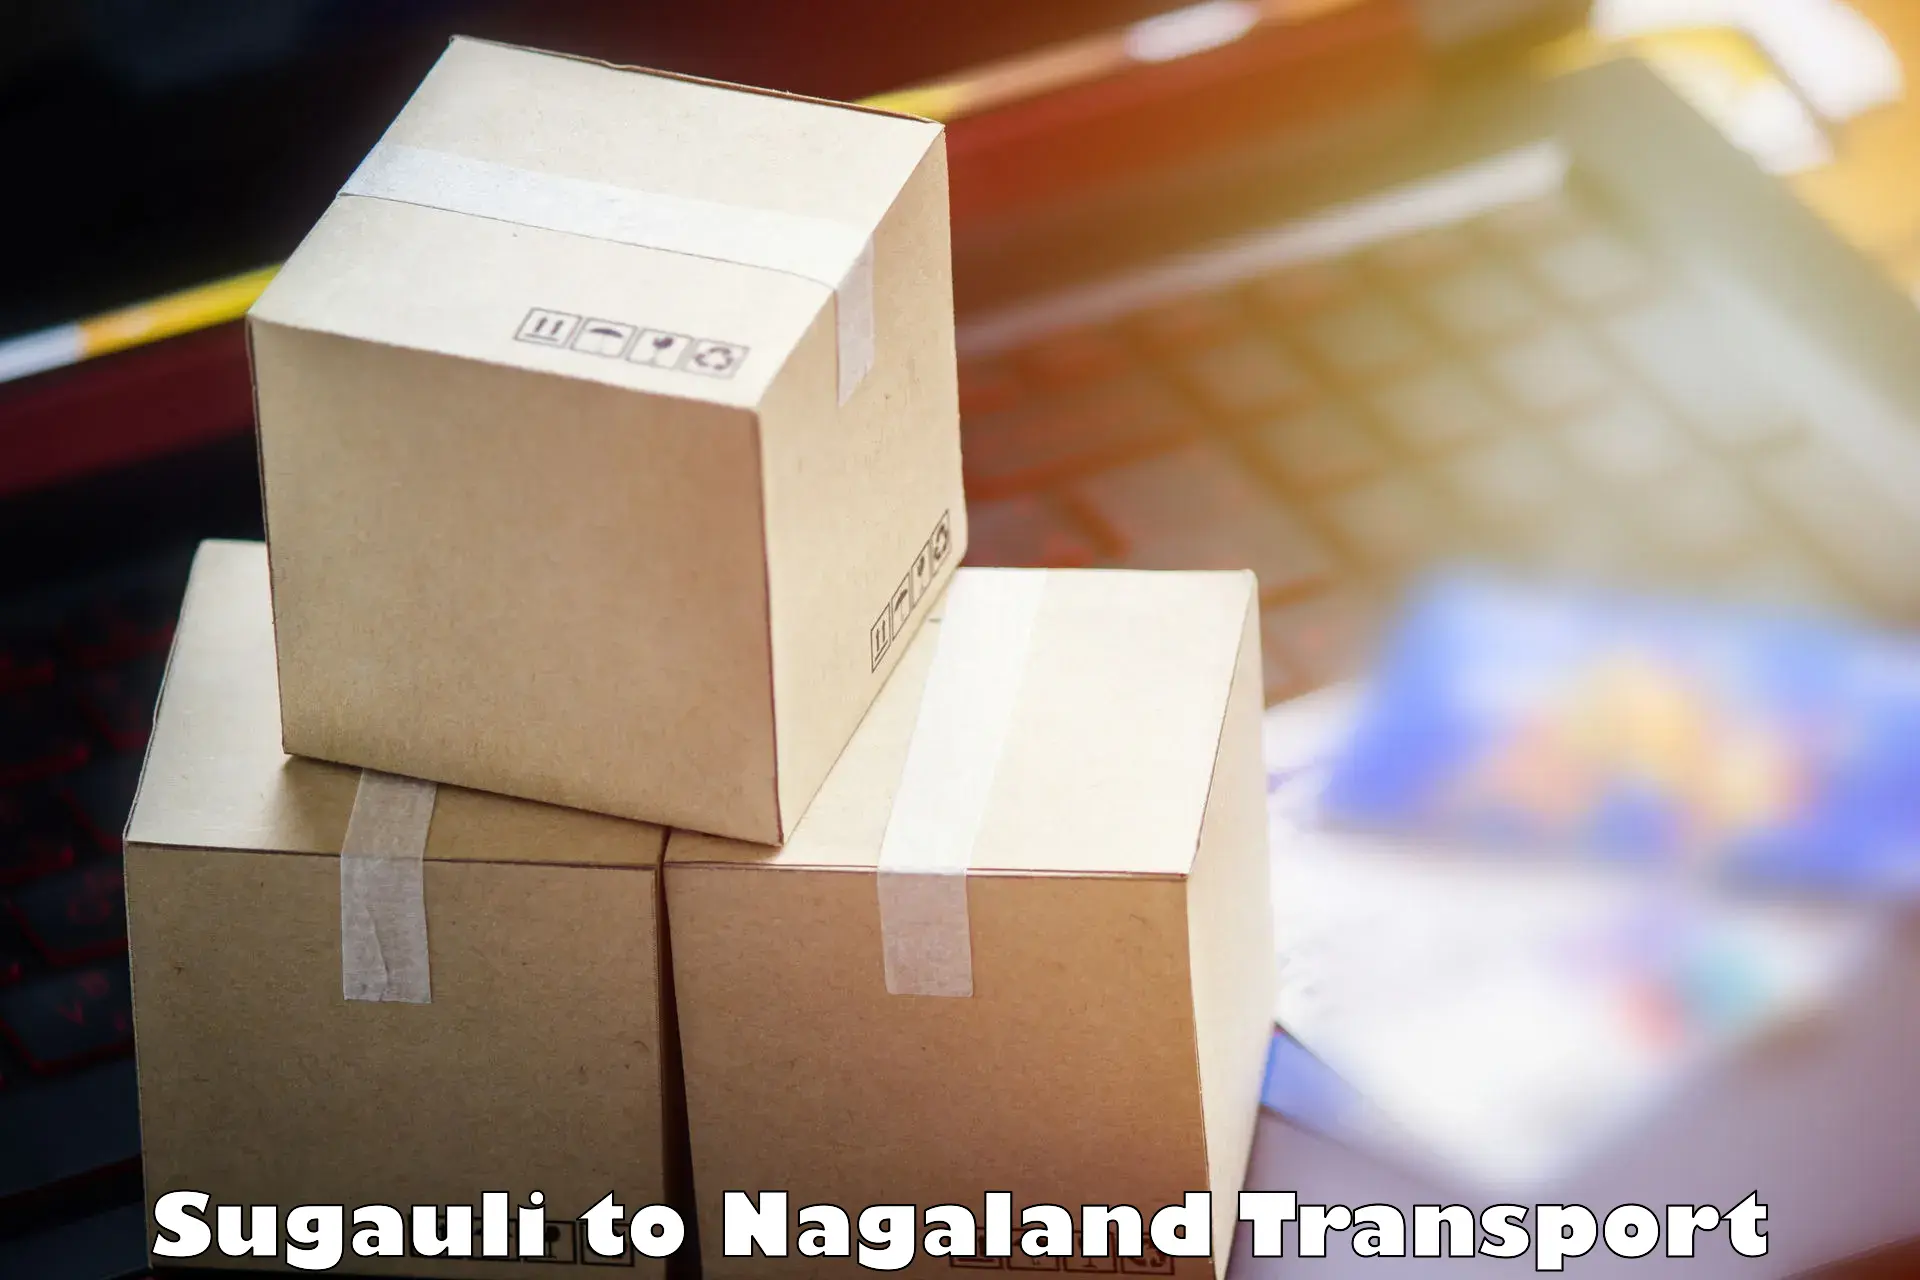 Cargo transport services Sugauli to NIT Nagaland